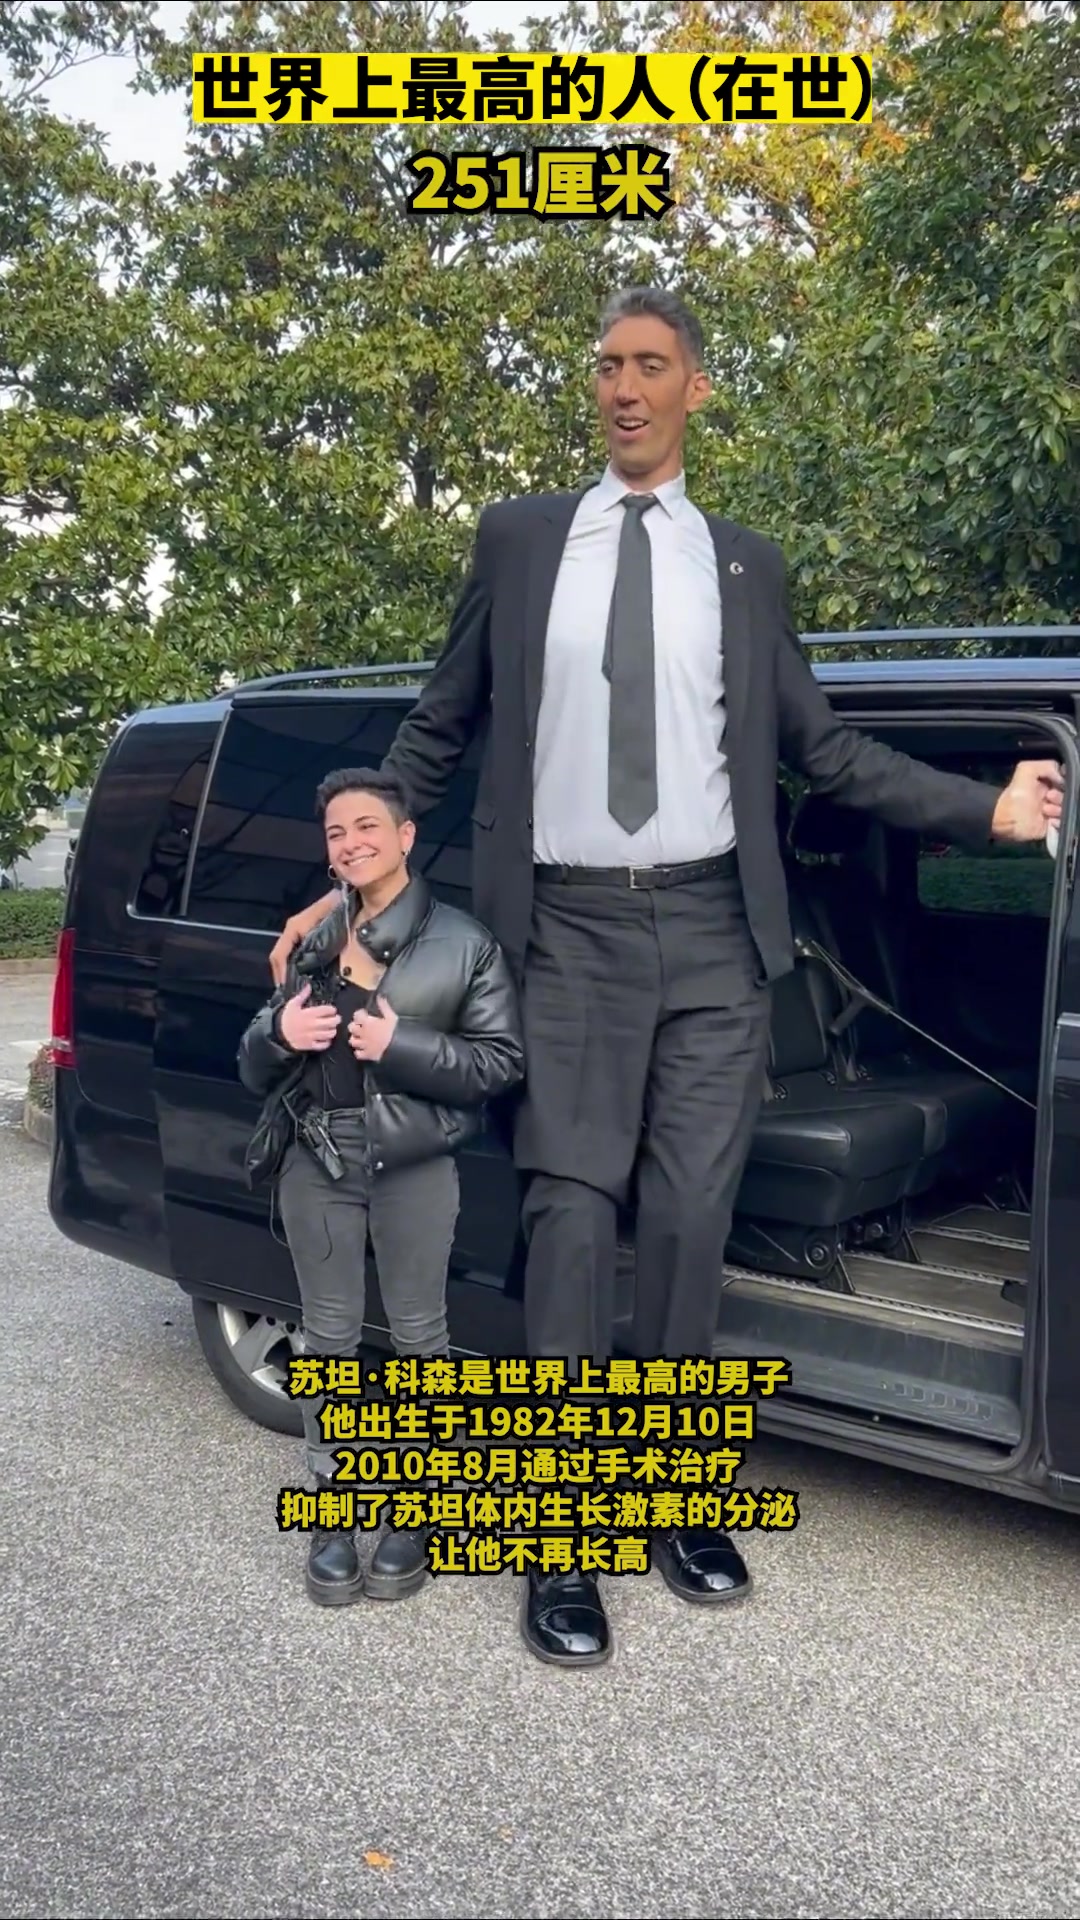 比文班还高近30公分！据说是当今世界上最高男人 高达2米51！